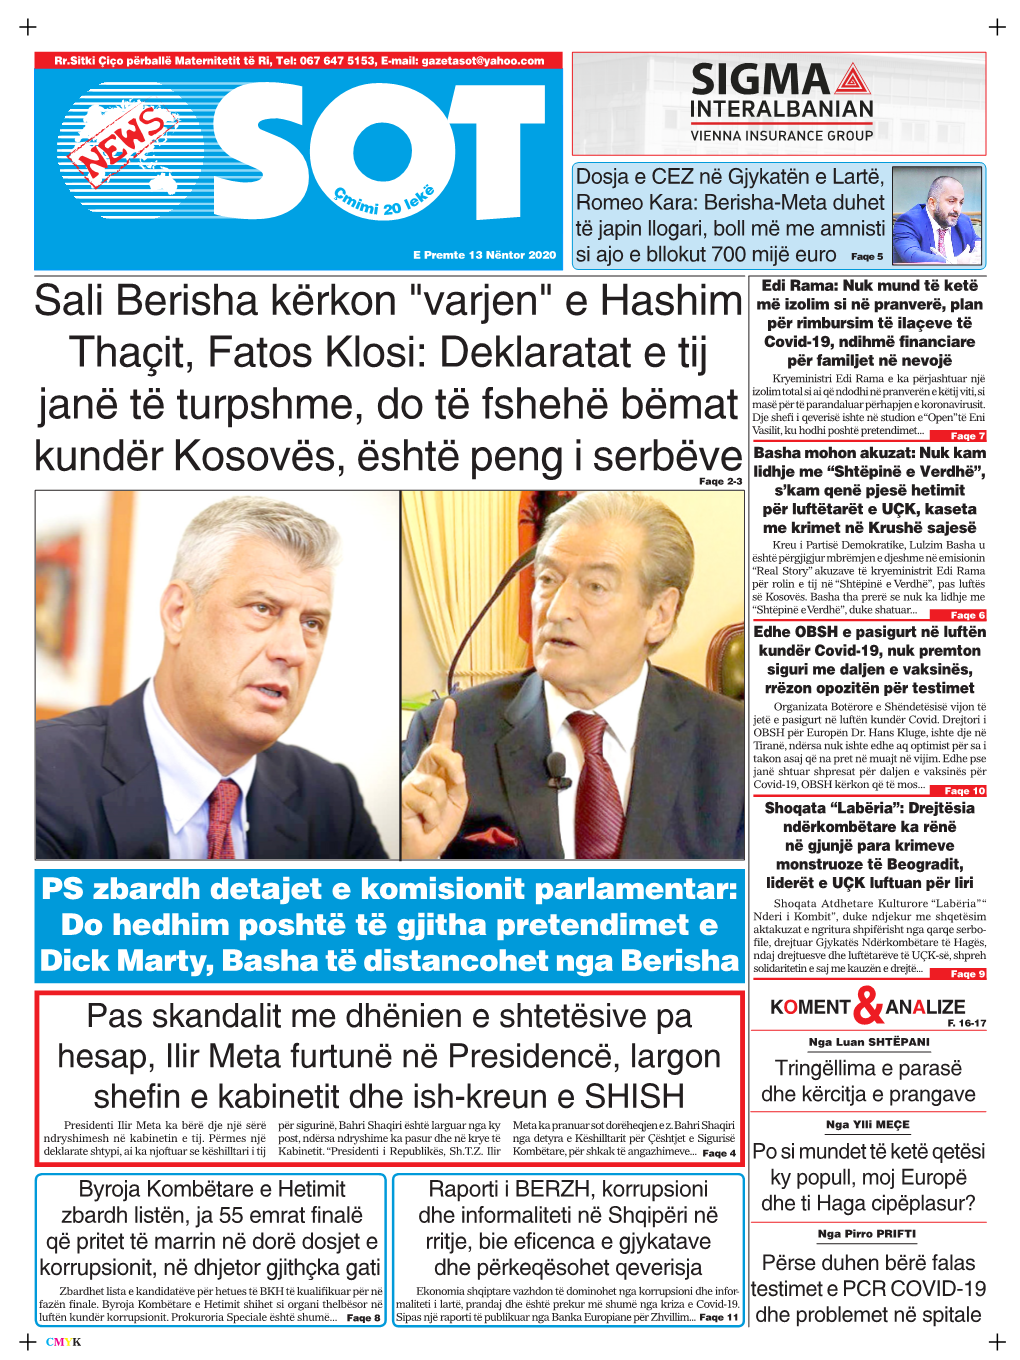 Sali Berisha Kërkon "Varjen" E Hashim Thaçit, Fatos Klosi: Deklaratat E Tij Janë Të Turpshme, Do Të Fshehë Bëma